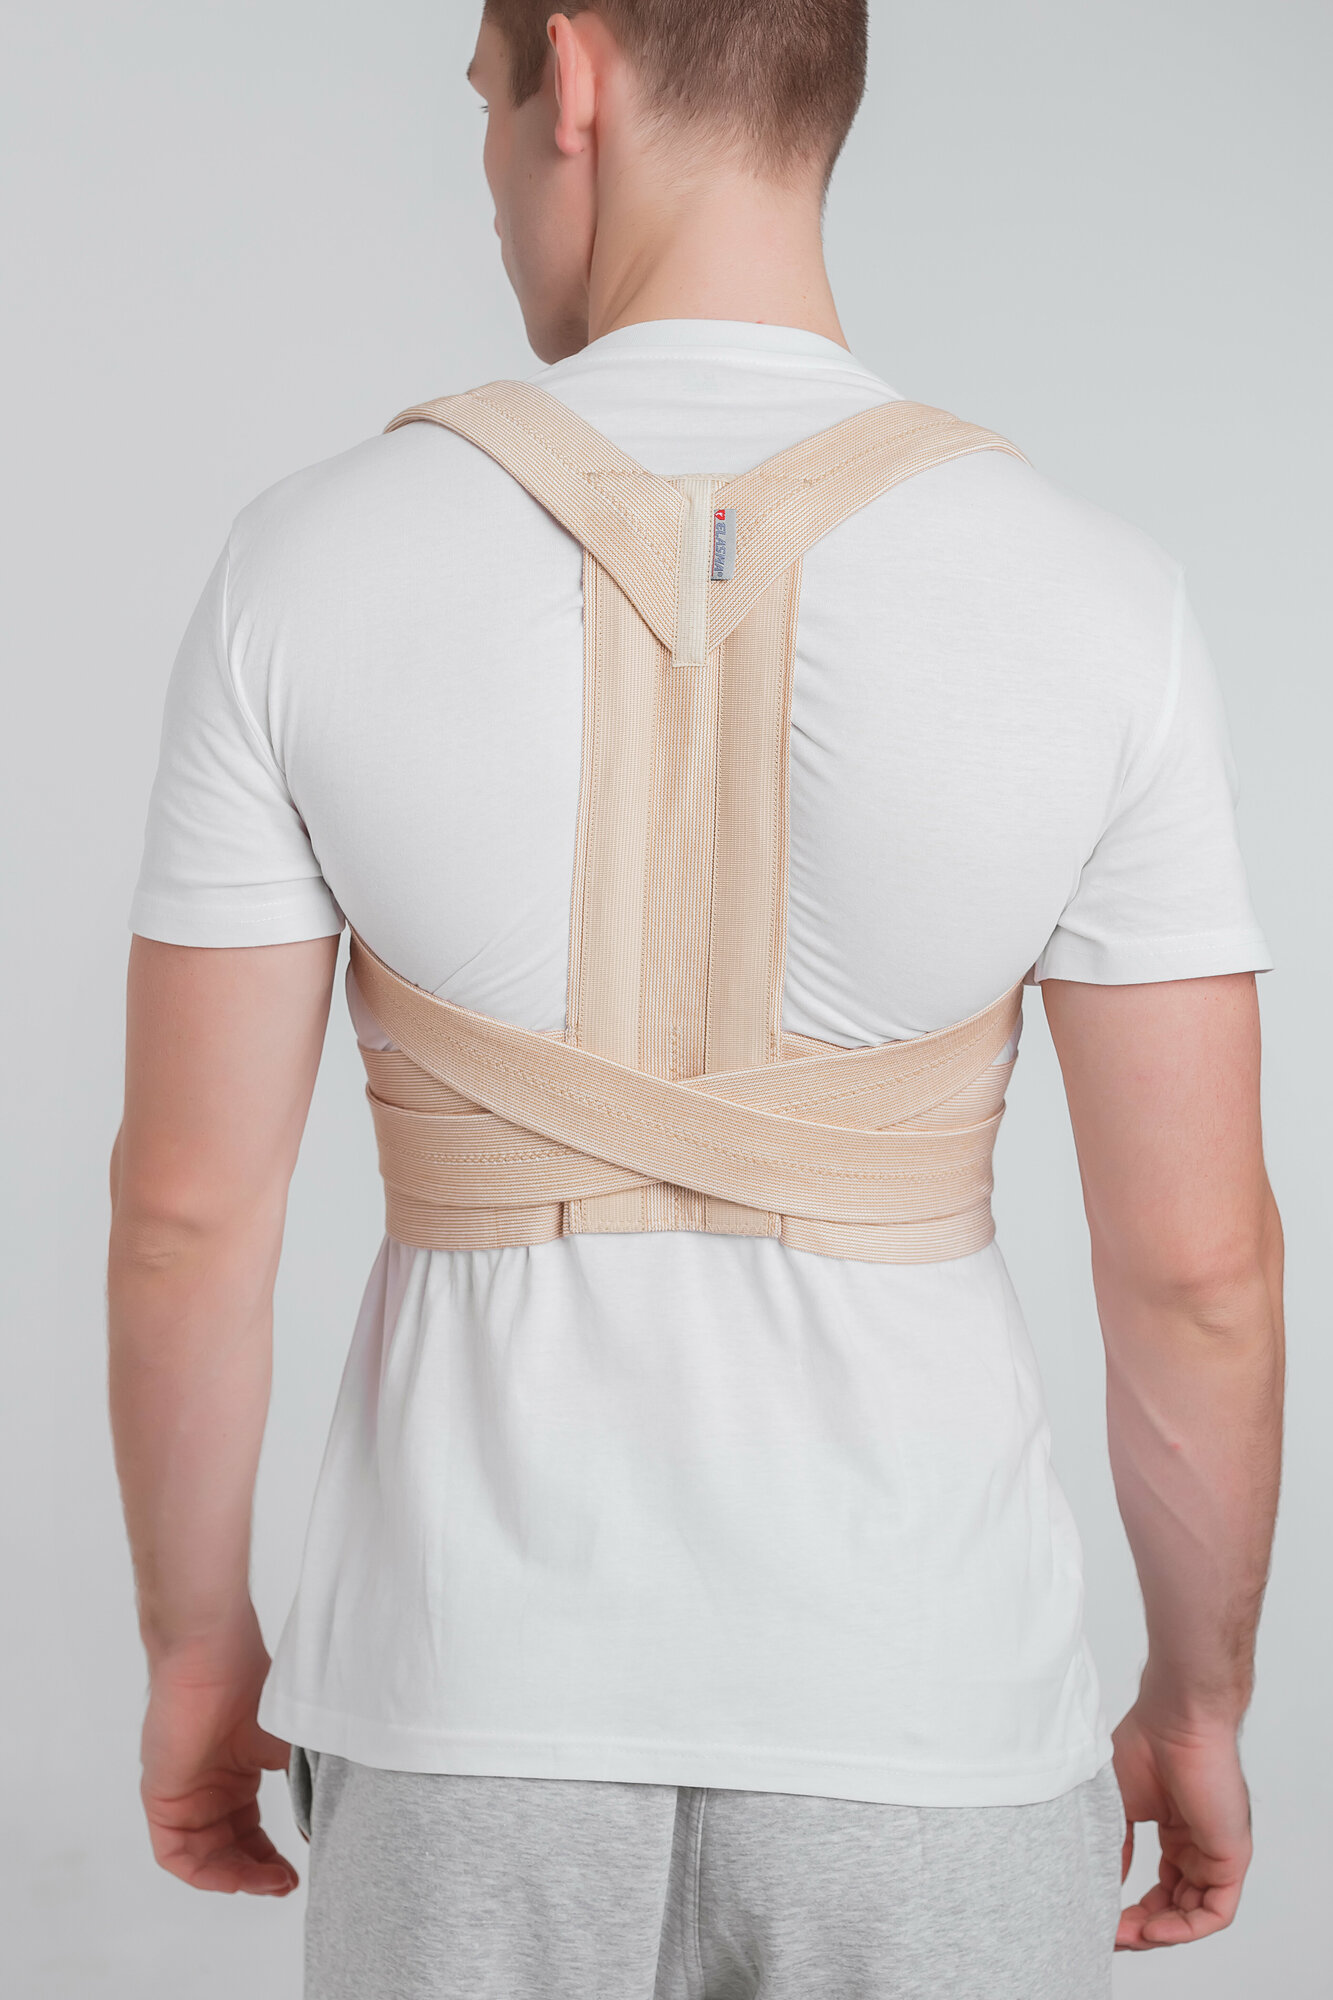 Корректор осанки ортопедический Эласма - корсет для спины медицинский эластичный, регулируемый с жесткими вставками. Бежевый, 1 размер.